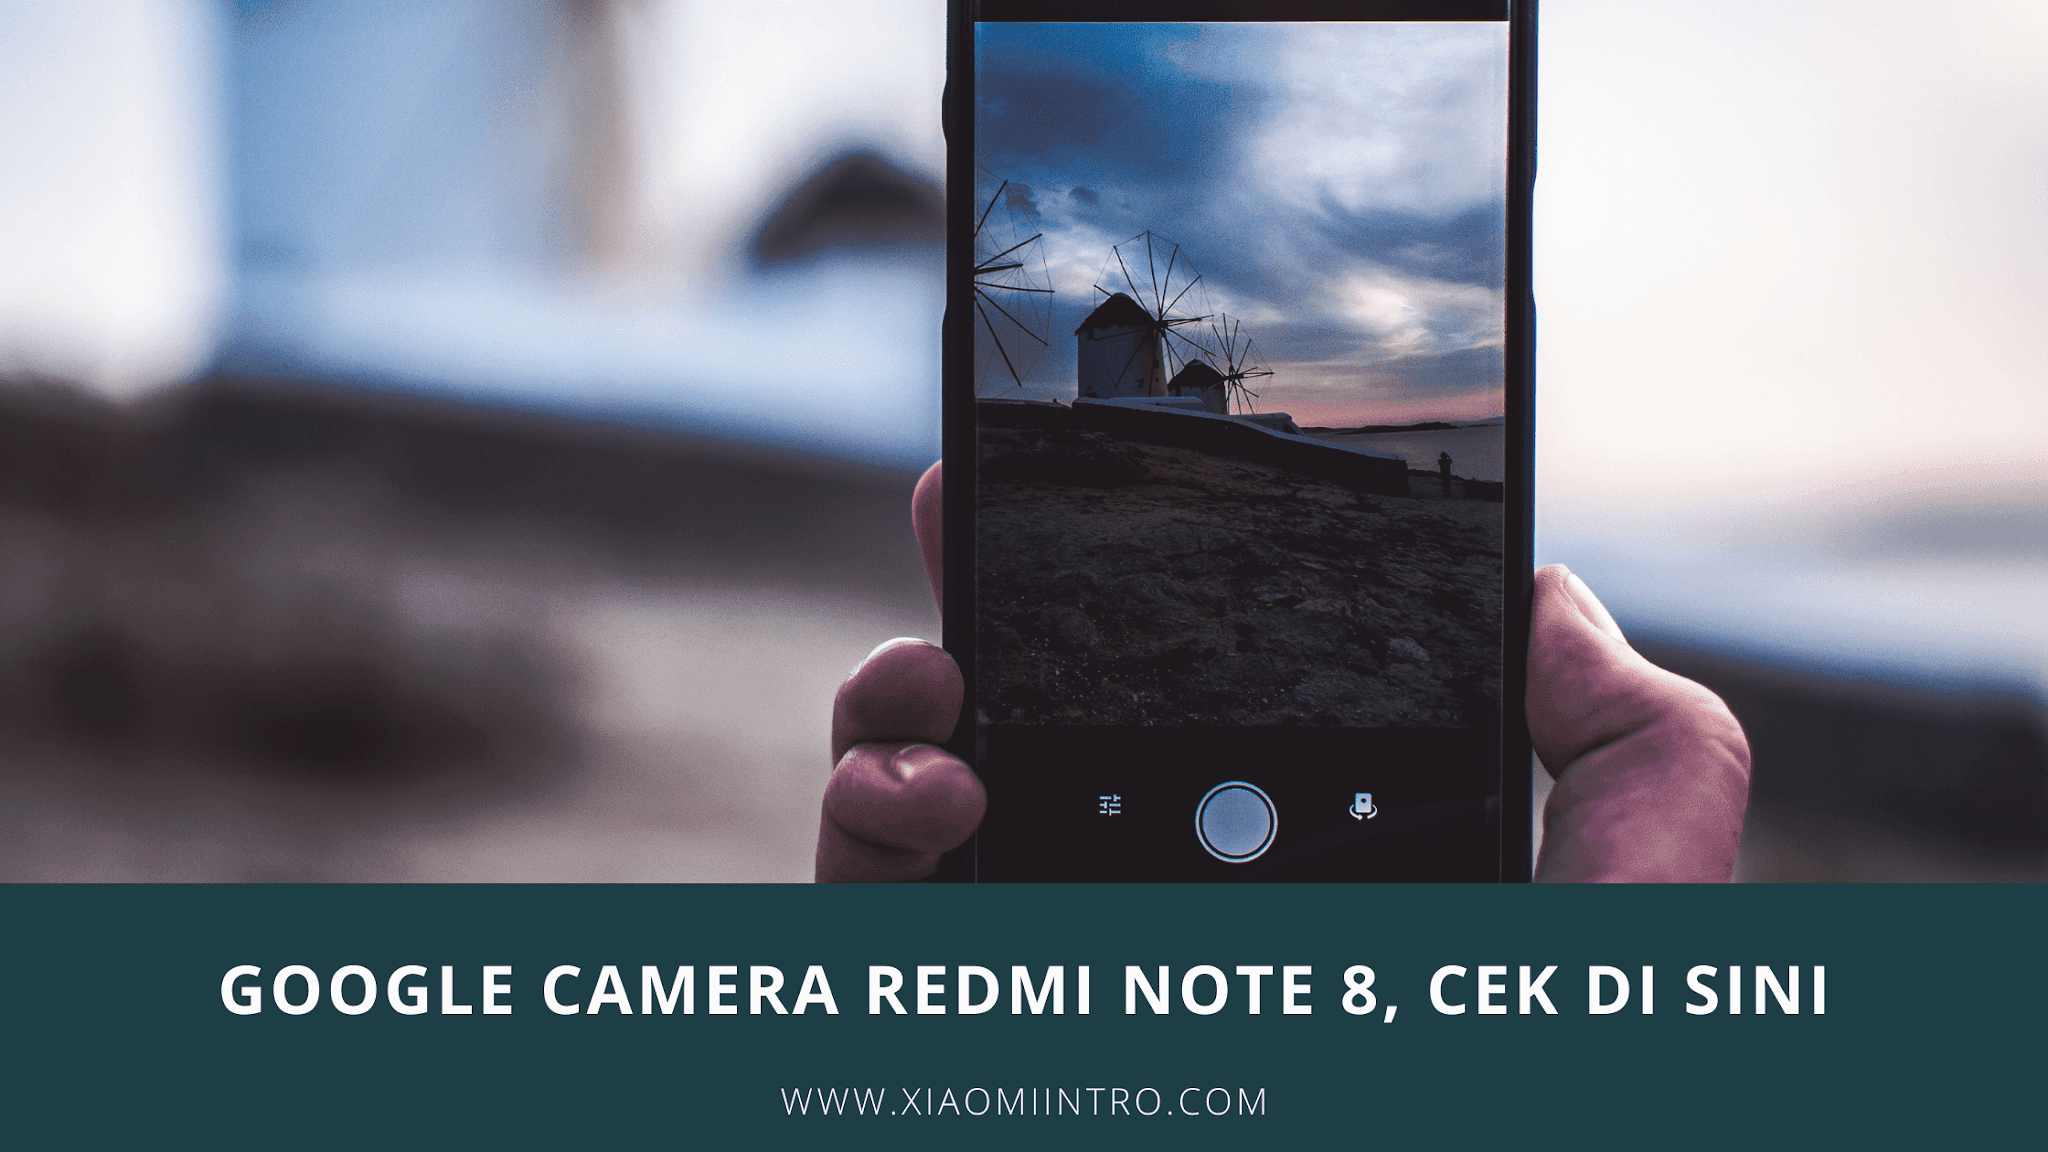 Google Camera Redmi Note 8, Cek Di Sini